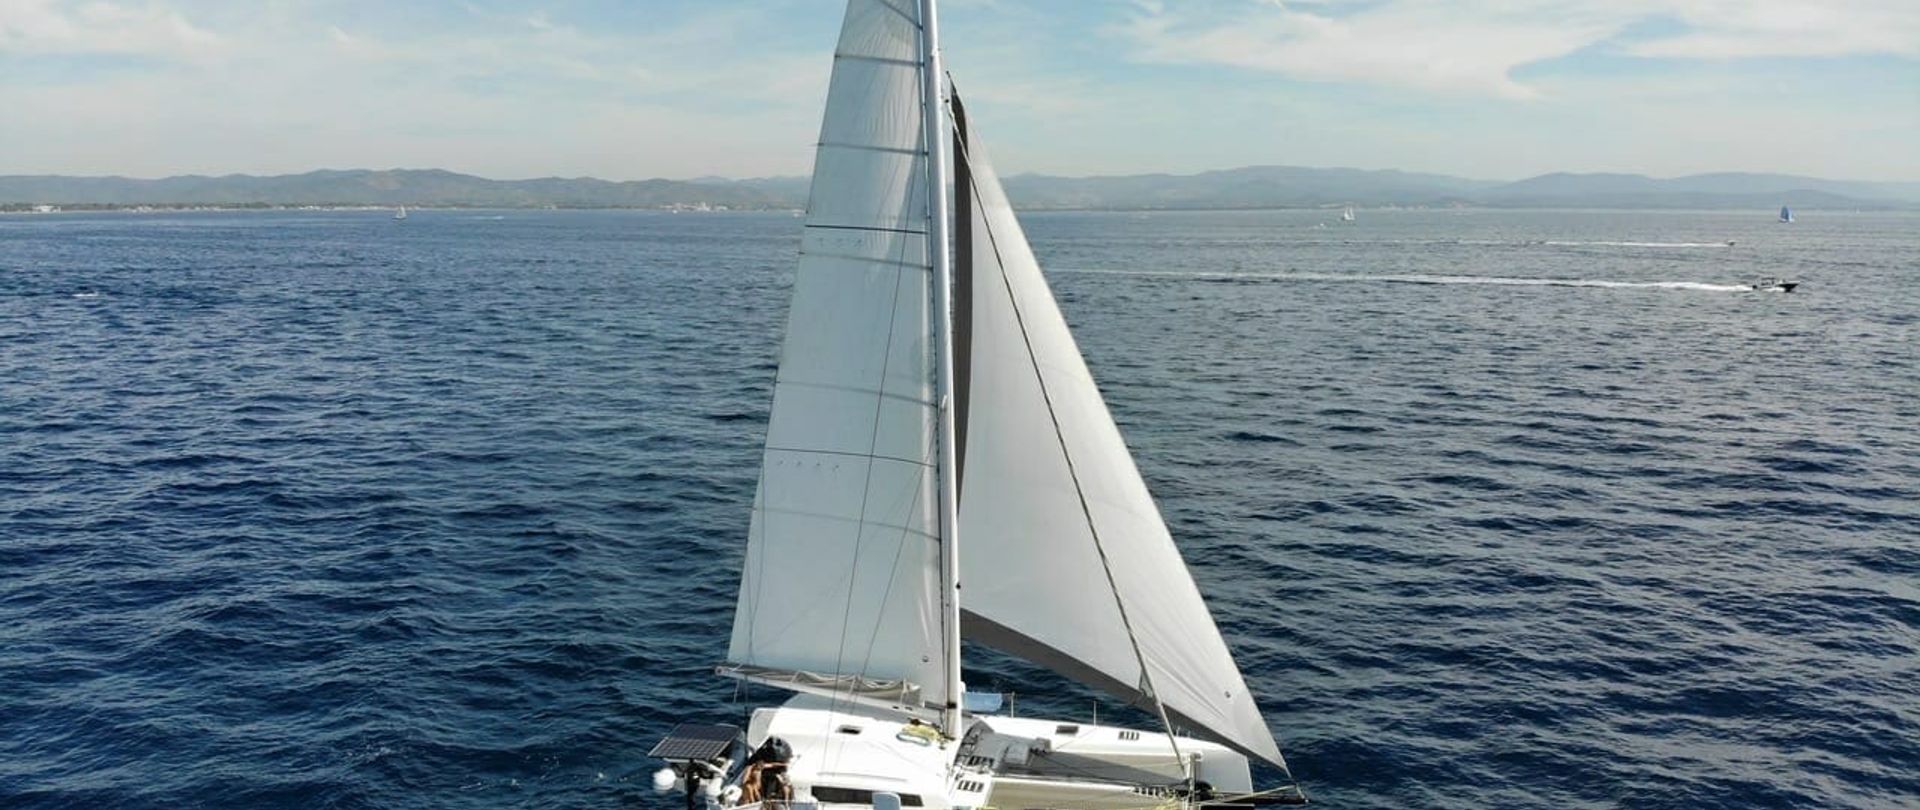 Croisière Côte d'Azur - catamaran de course TS 42